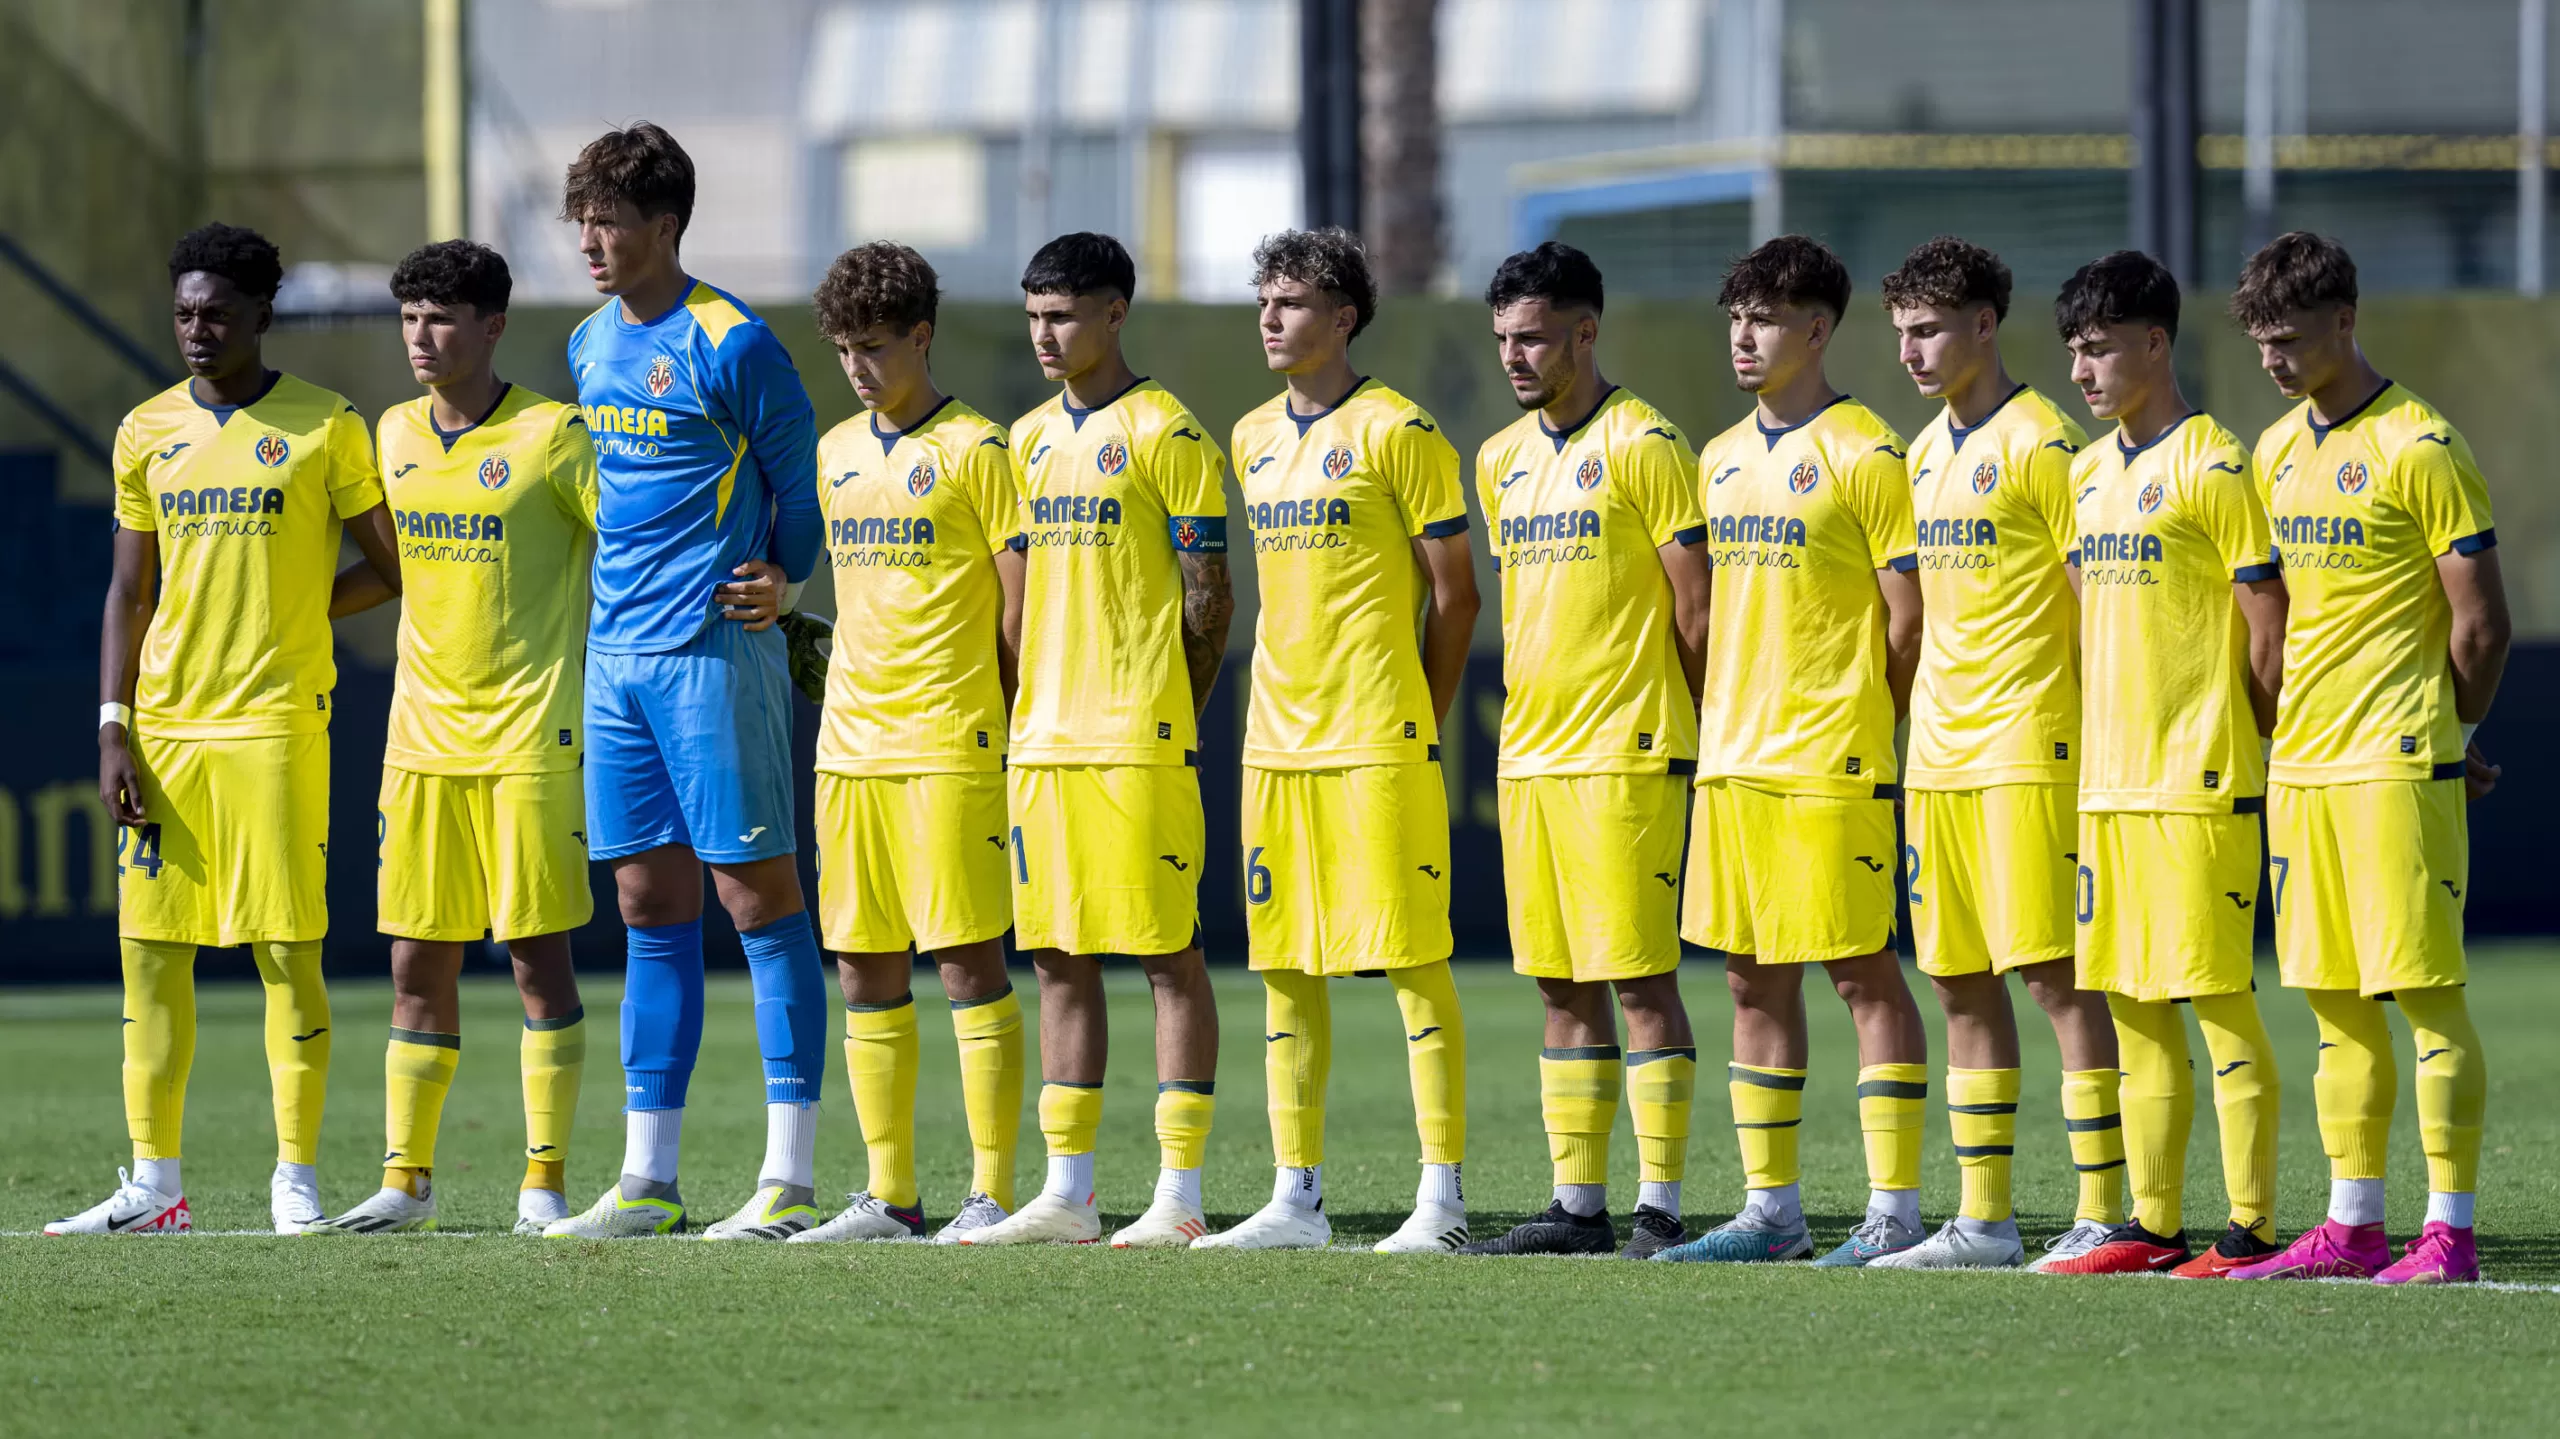 Un regalo para toda la vida - Web Oficial del Villarreal CF